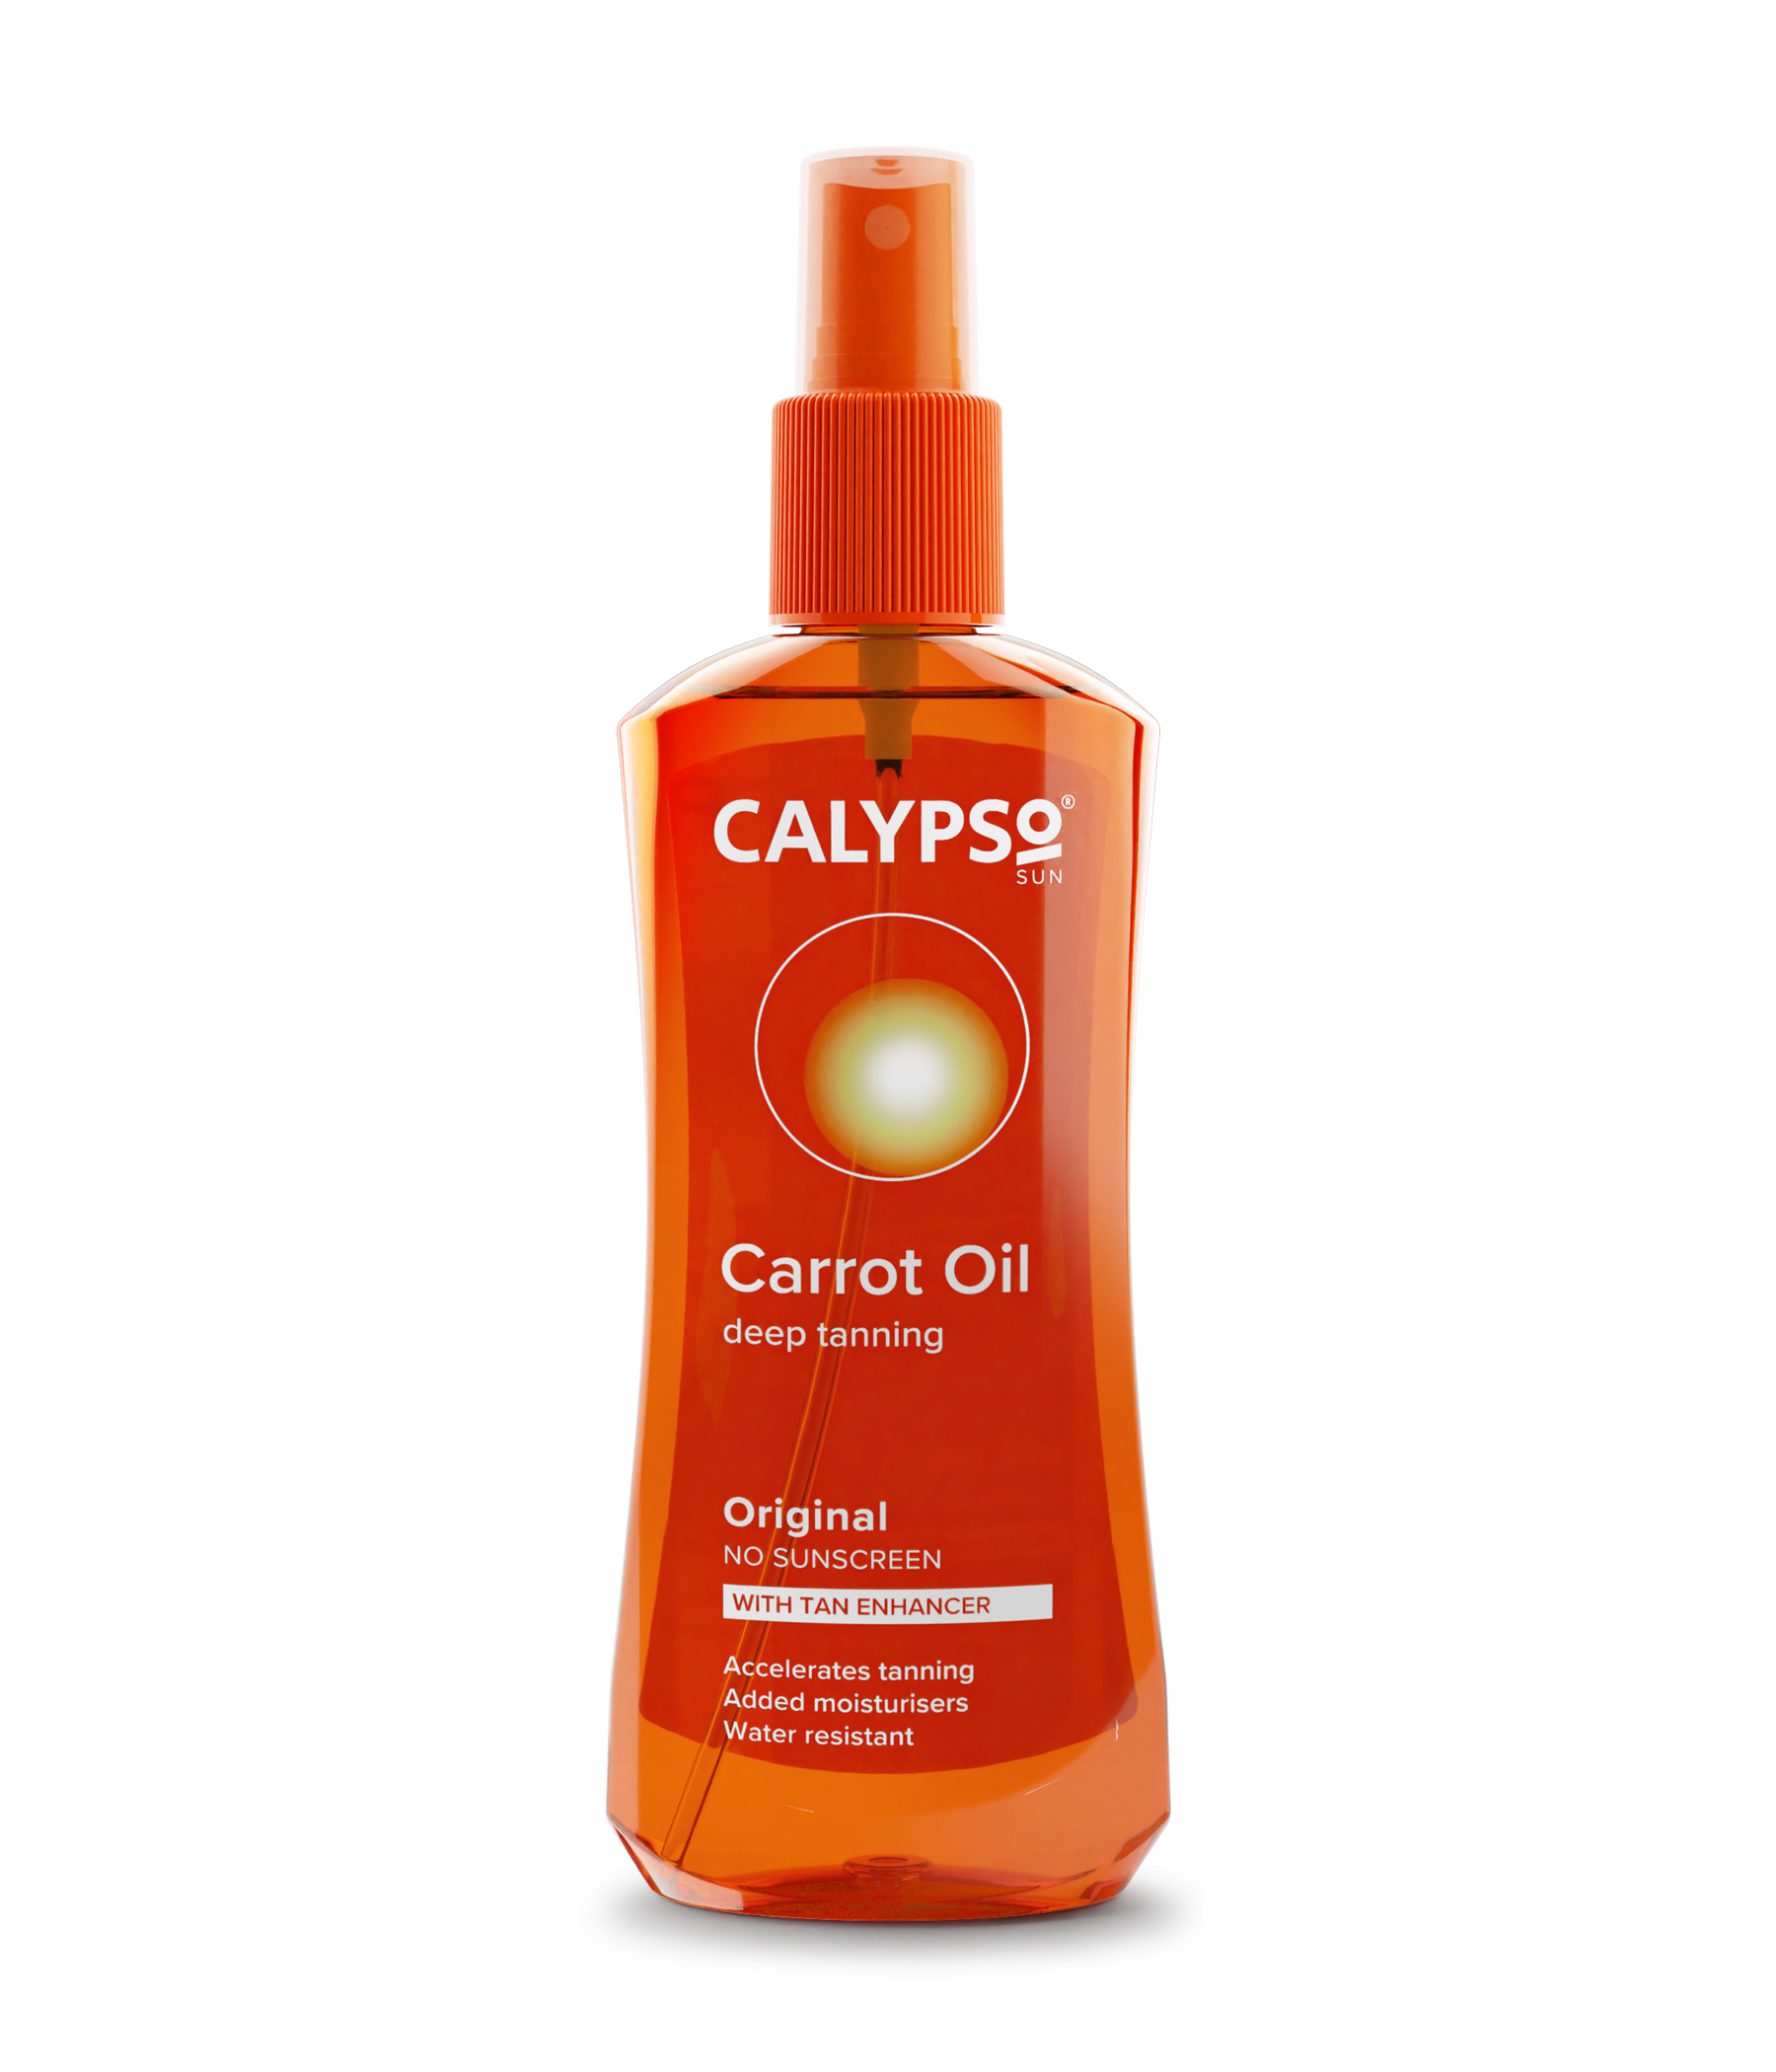 Calypso Original Carrot Oil